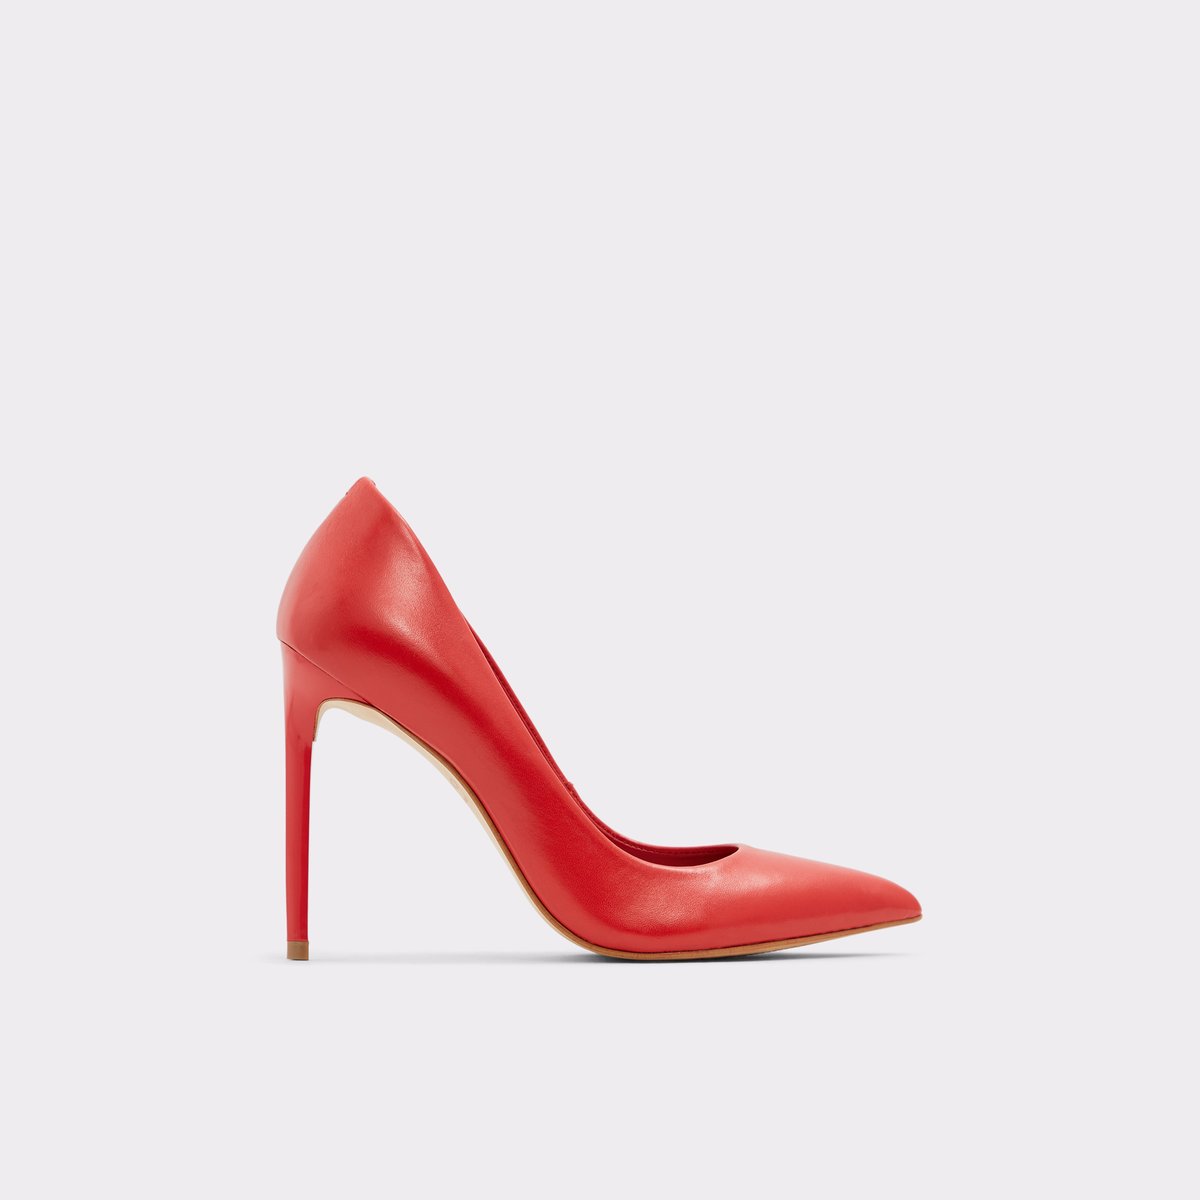 aldo shoes red heels